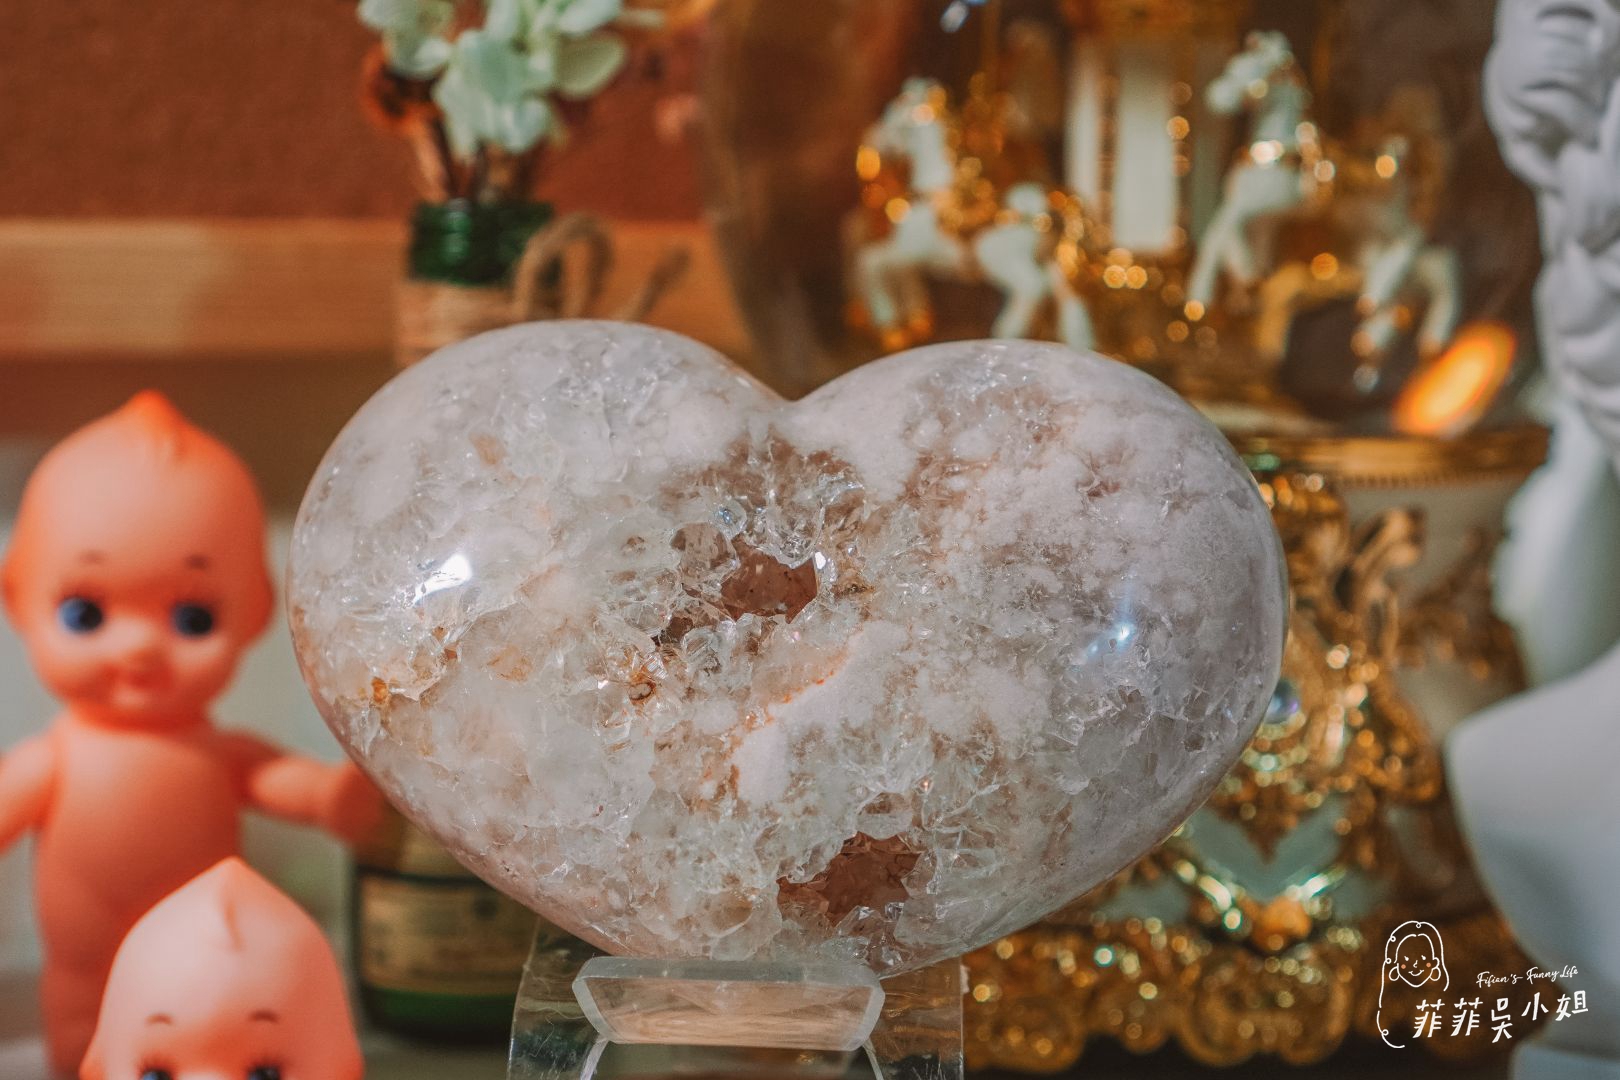 石之王-松菸誠品店 與夢幻水晶礦石來一場浪漫邂逅 相遇自己的命定水晶 @菲菲吳小姐